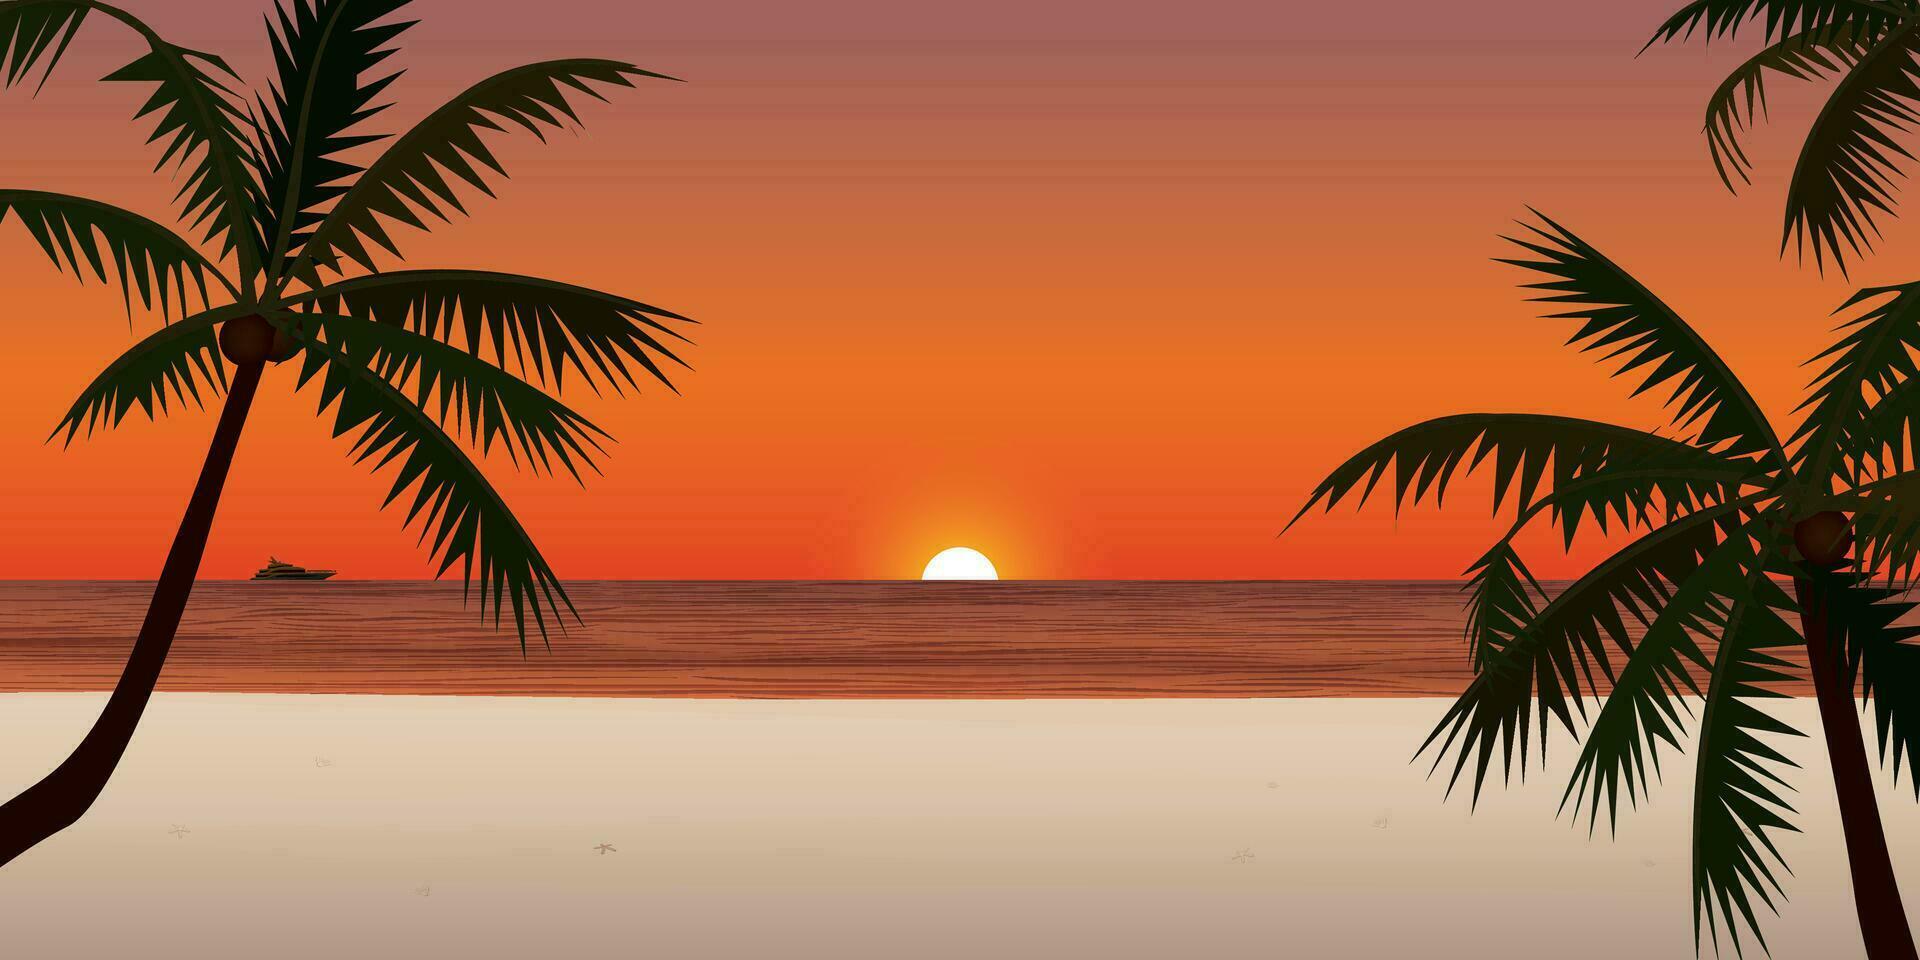 puesta de sol a blanco arena playa con yate a el horizonte tener silueta Coco árbol primer plano vector ilustración. playa puesta de sol concepto plano diseño.